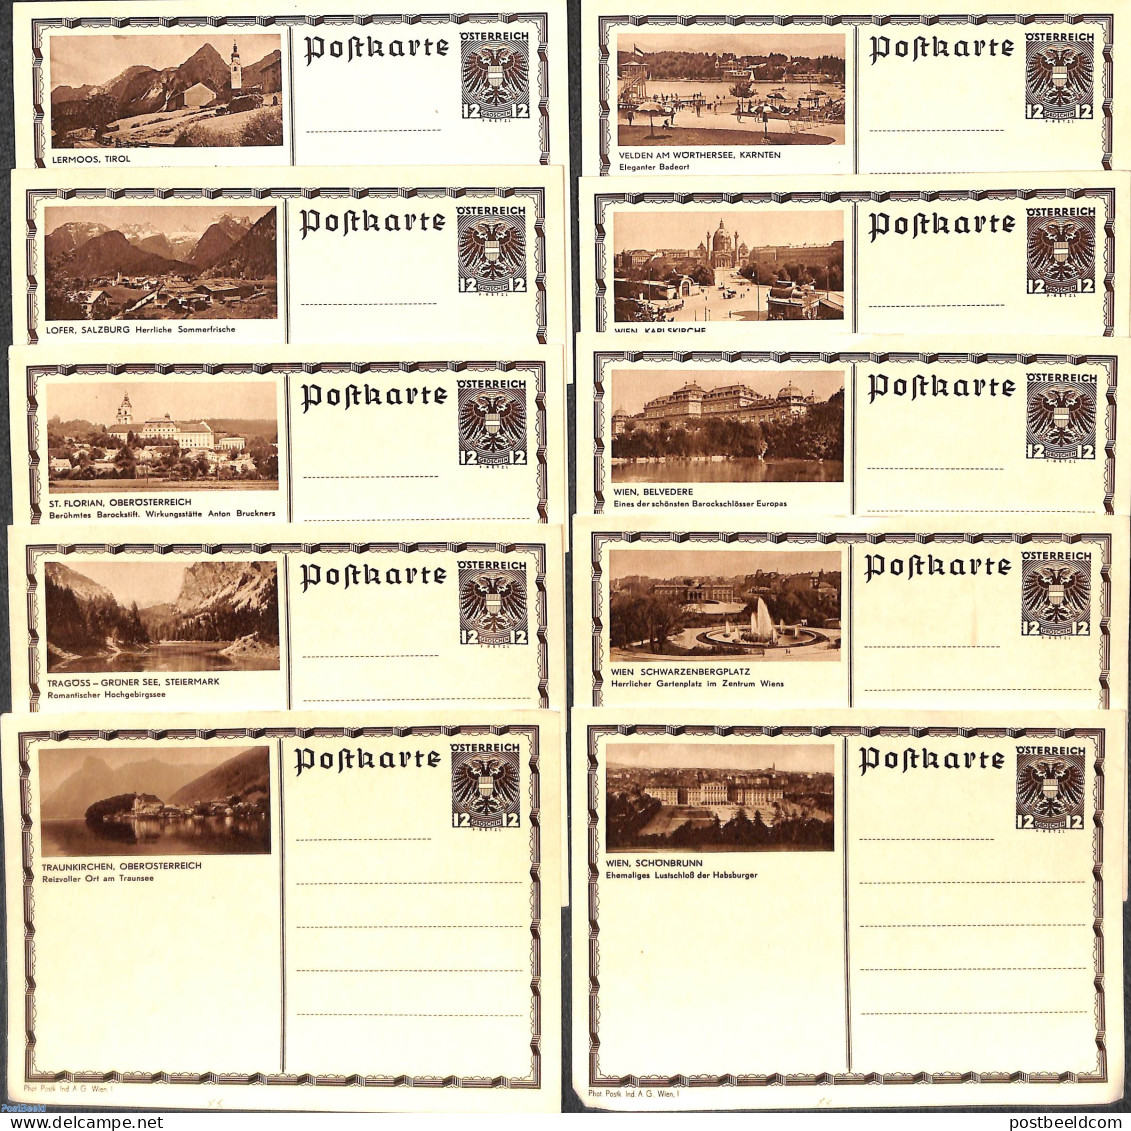 Austria 1930 10 Illustrated Postcards, Unused Postal Stationary - Briefe U. Dokumente